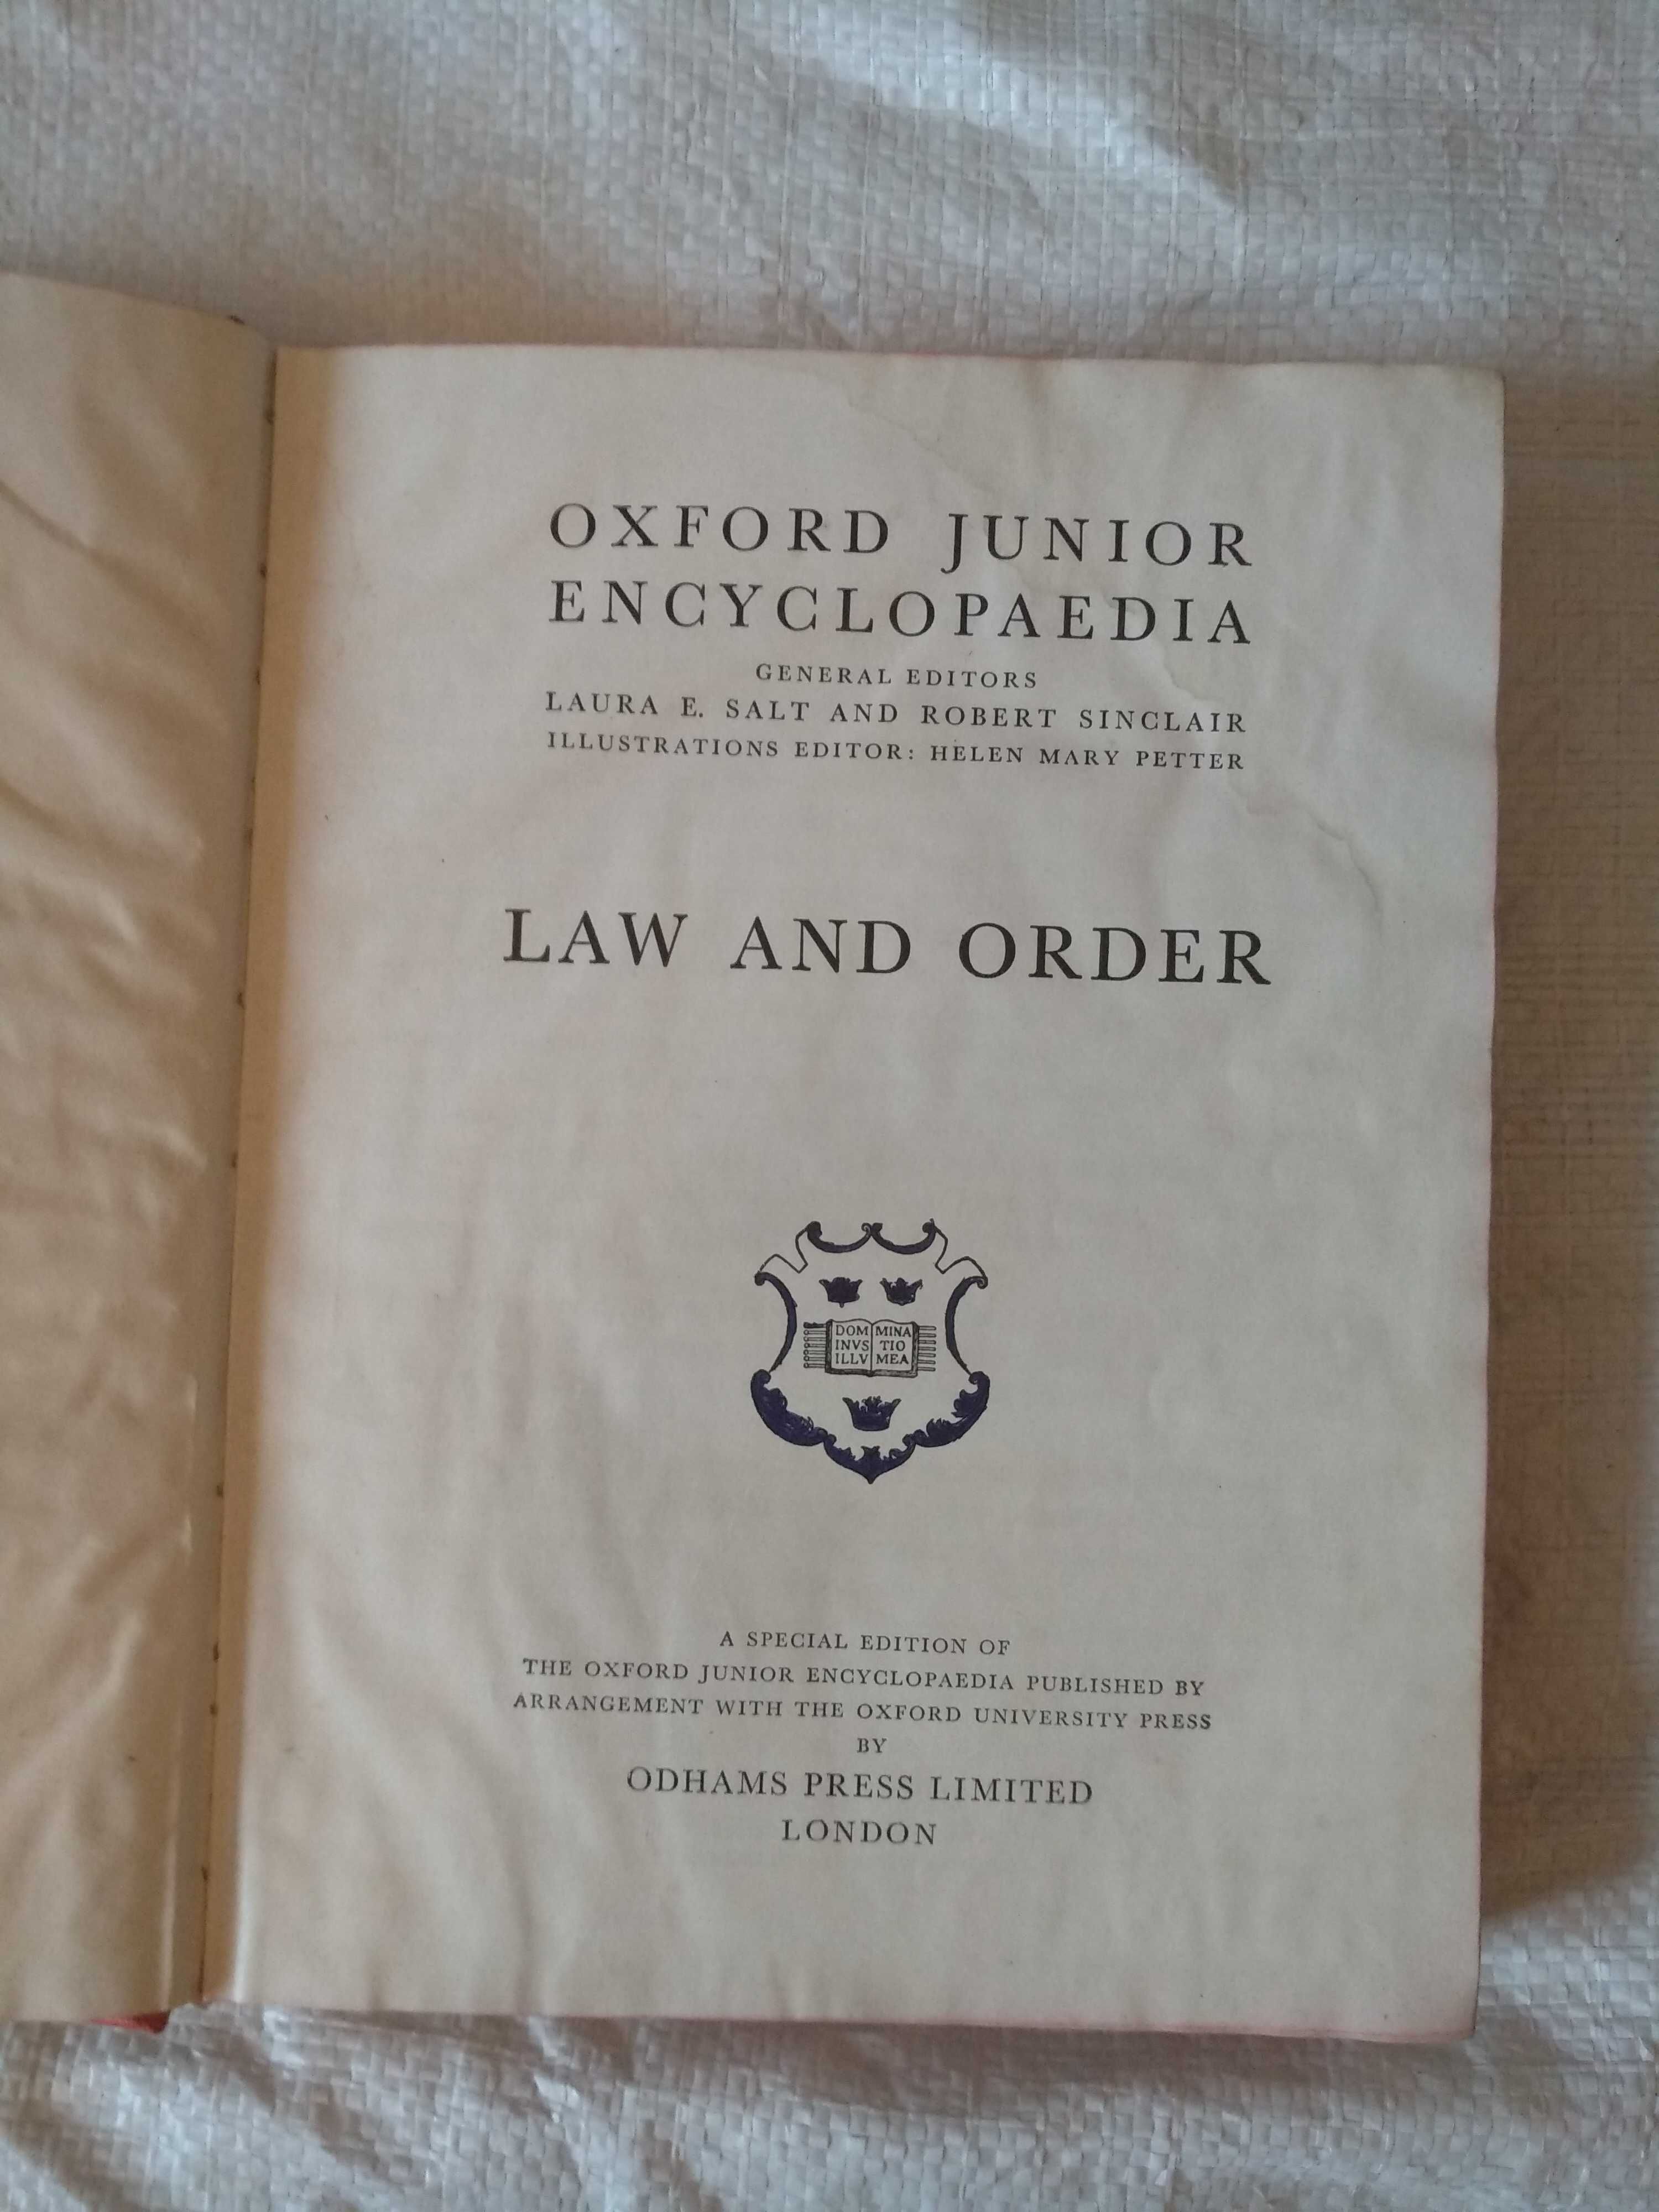 Oxford junior encyclopaedia